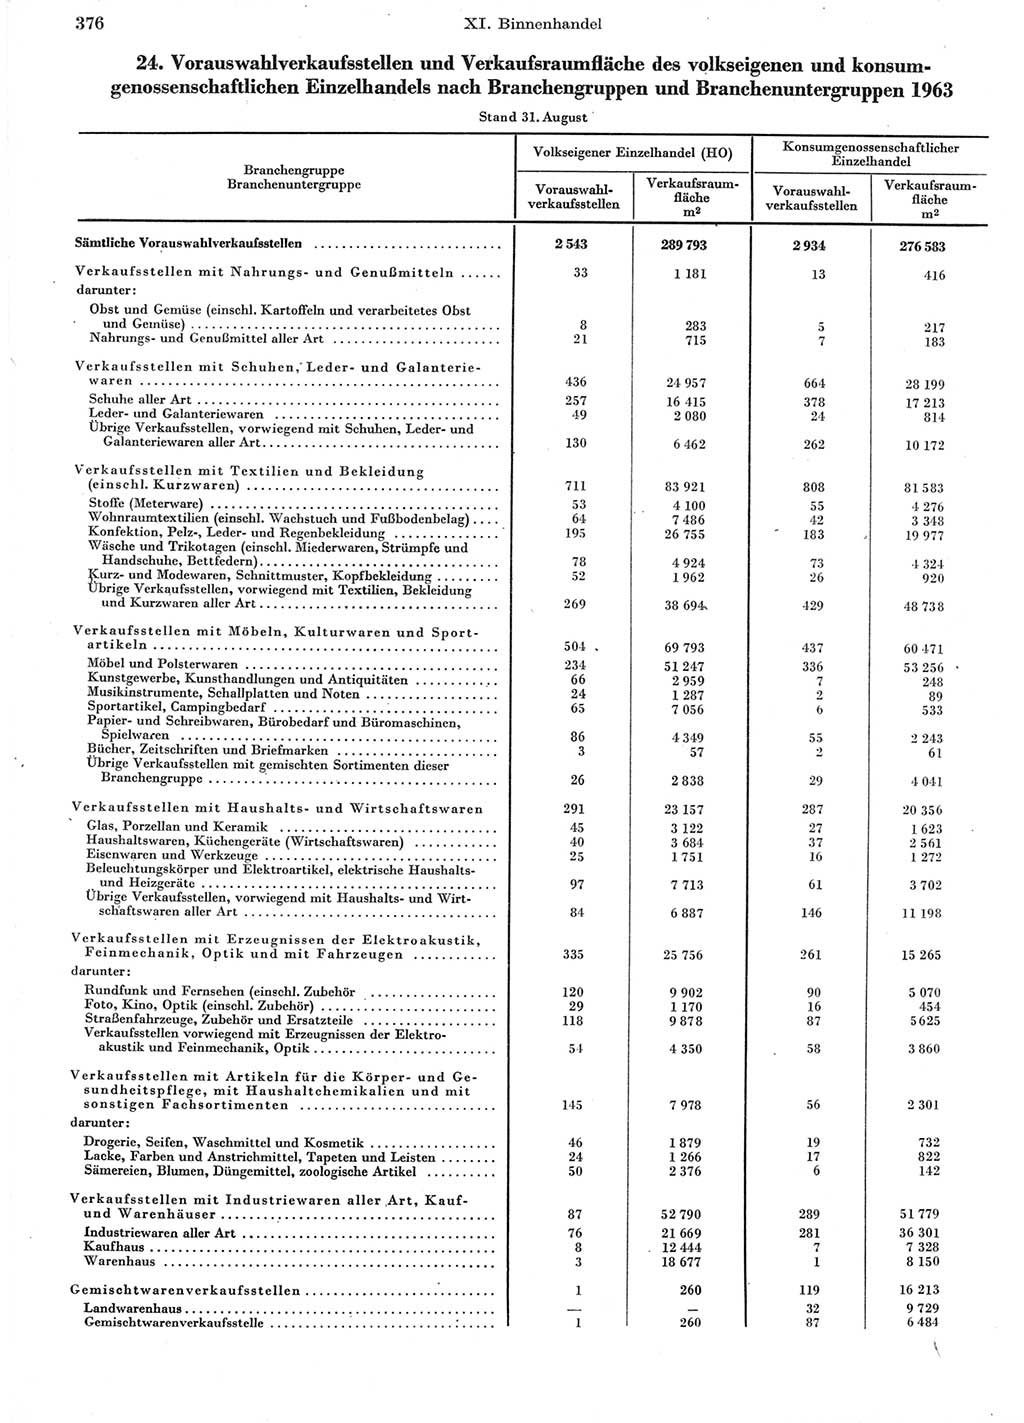 Statistisches Jahrbuch der Deutschen Demokratischen Republik (DDR) 1964, Seite 376 (Stat. Jb. DDR 1964, S. 376)